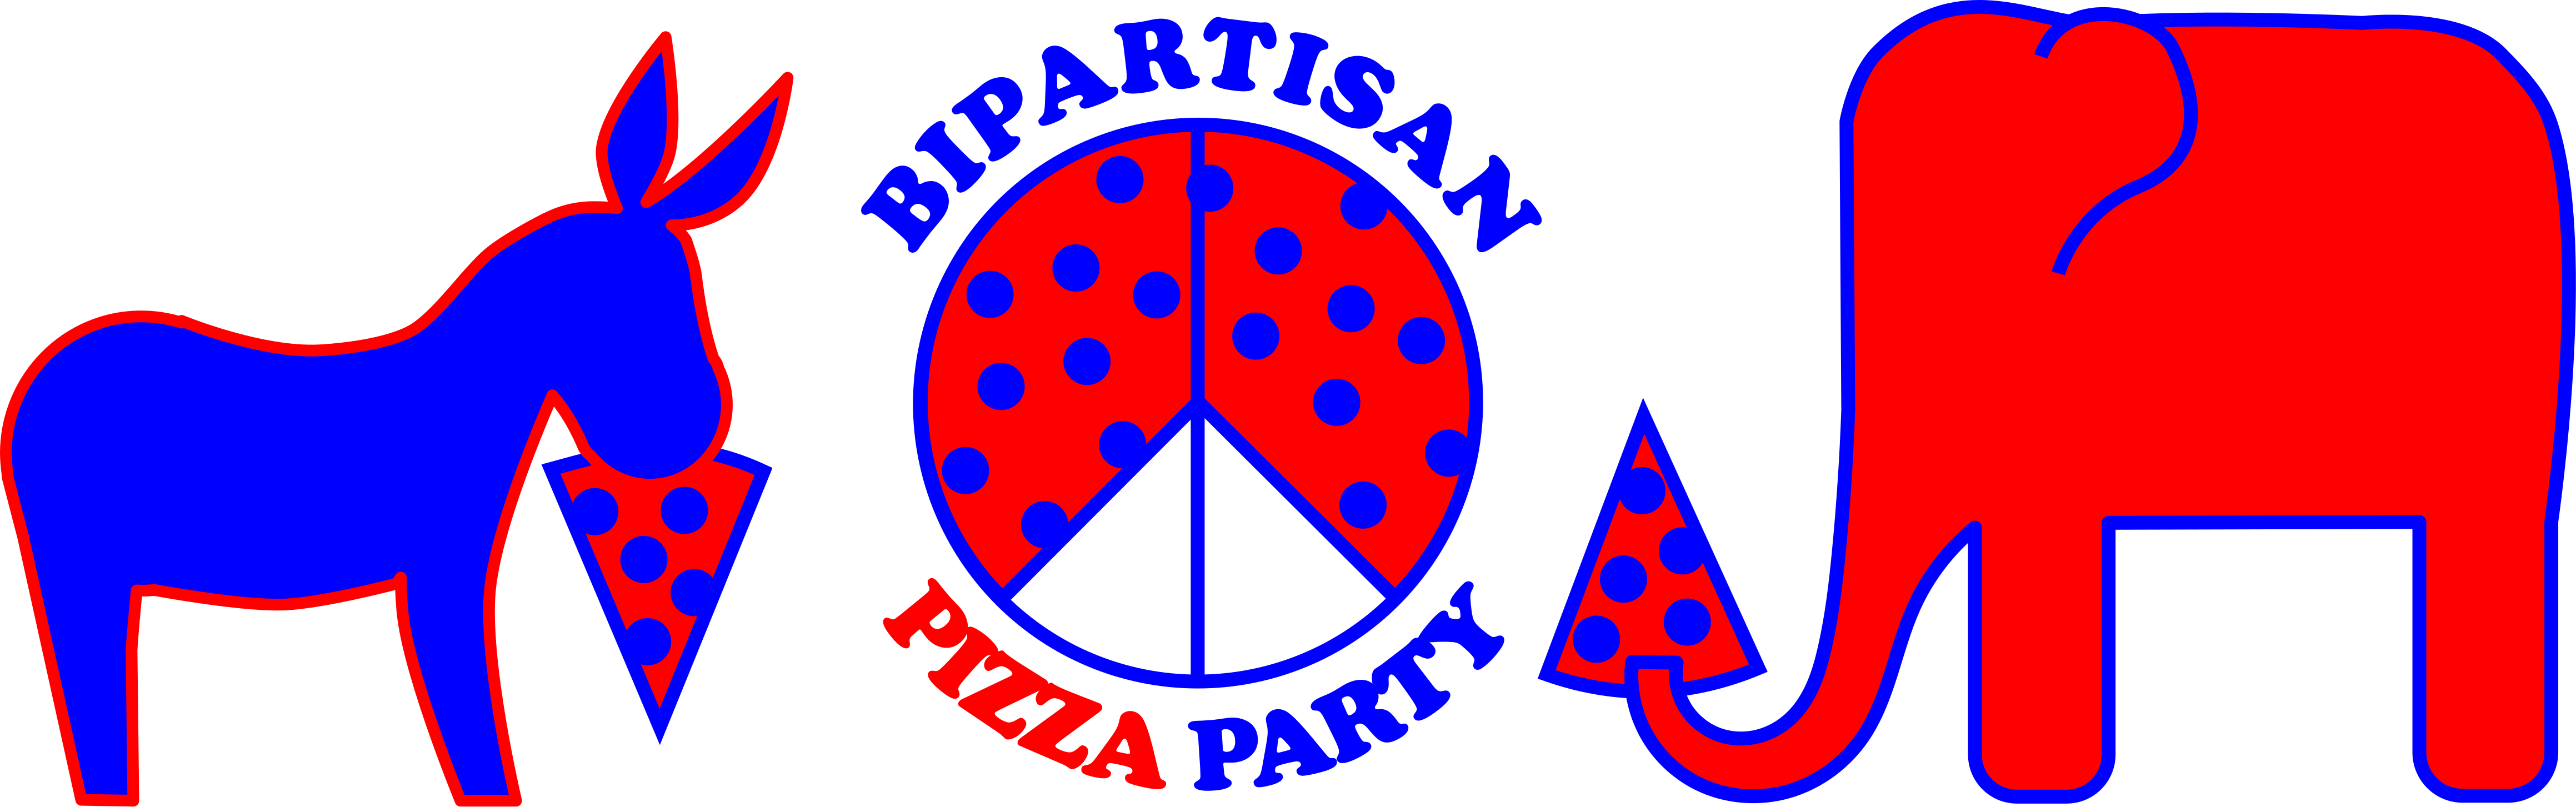 bipartisan4